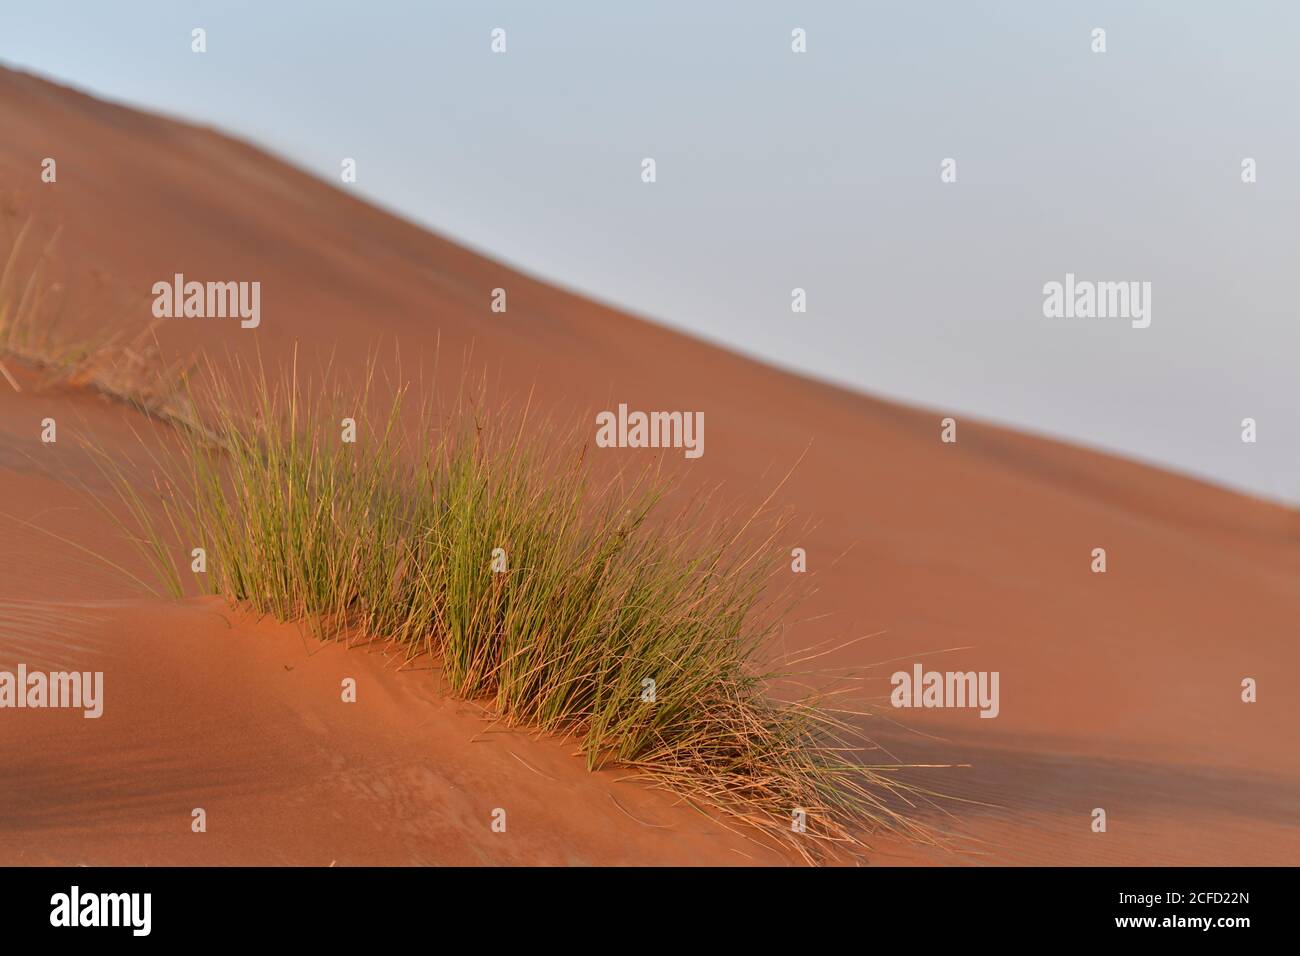 Arabische Halbinsel Wüste Sanddünen, Ausstellung der verschiedenen ökologischen Pflanzenarten, die in den wechselnden Winden der Wüstenlandschaften gedeihen können. Stockfoto